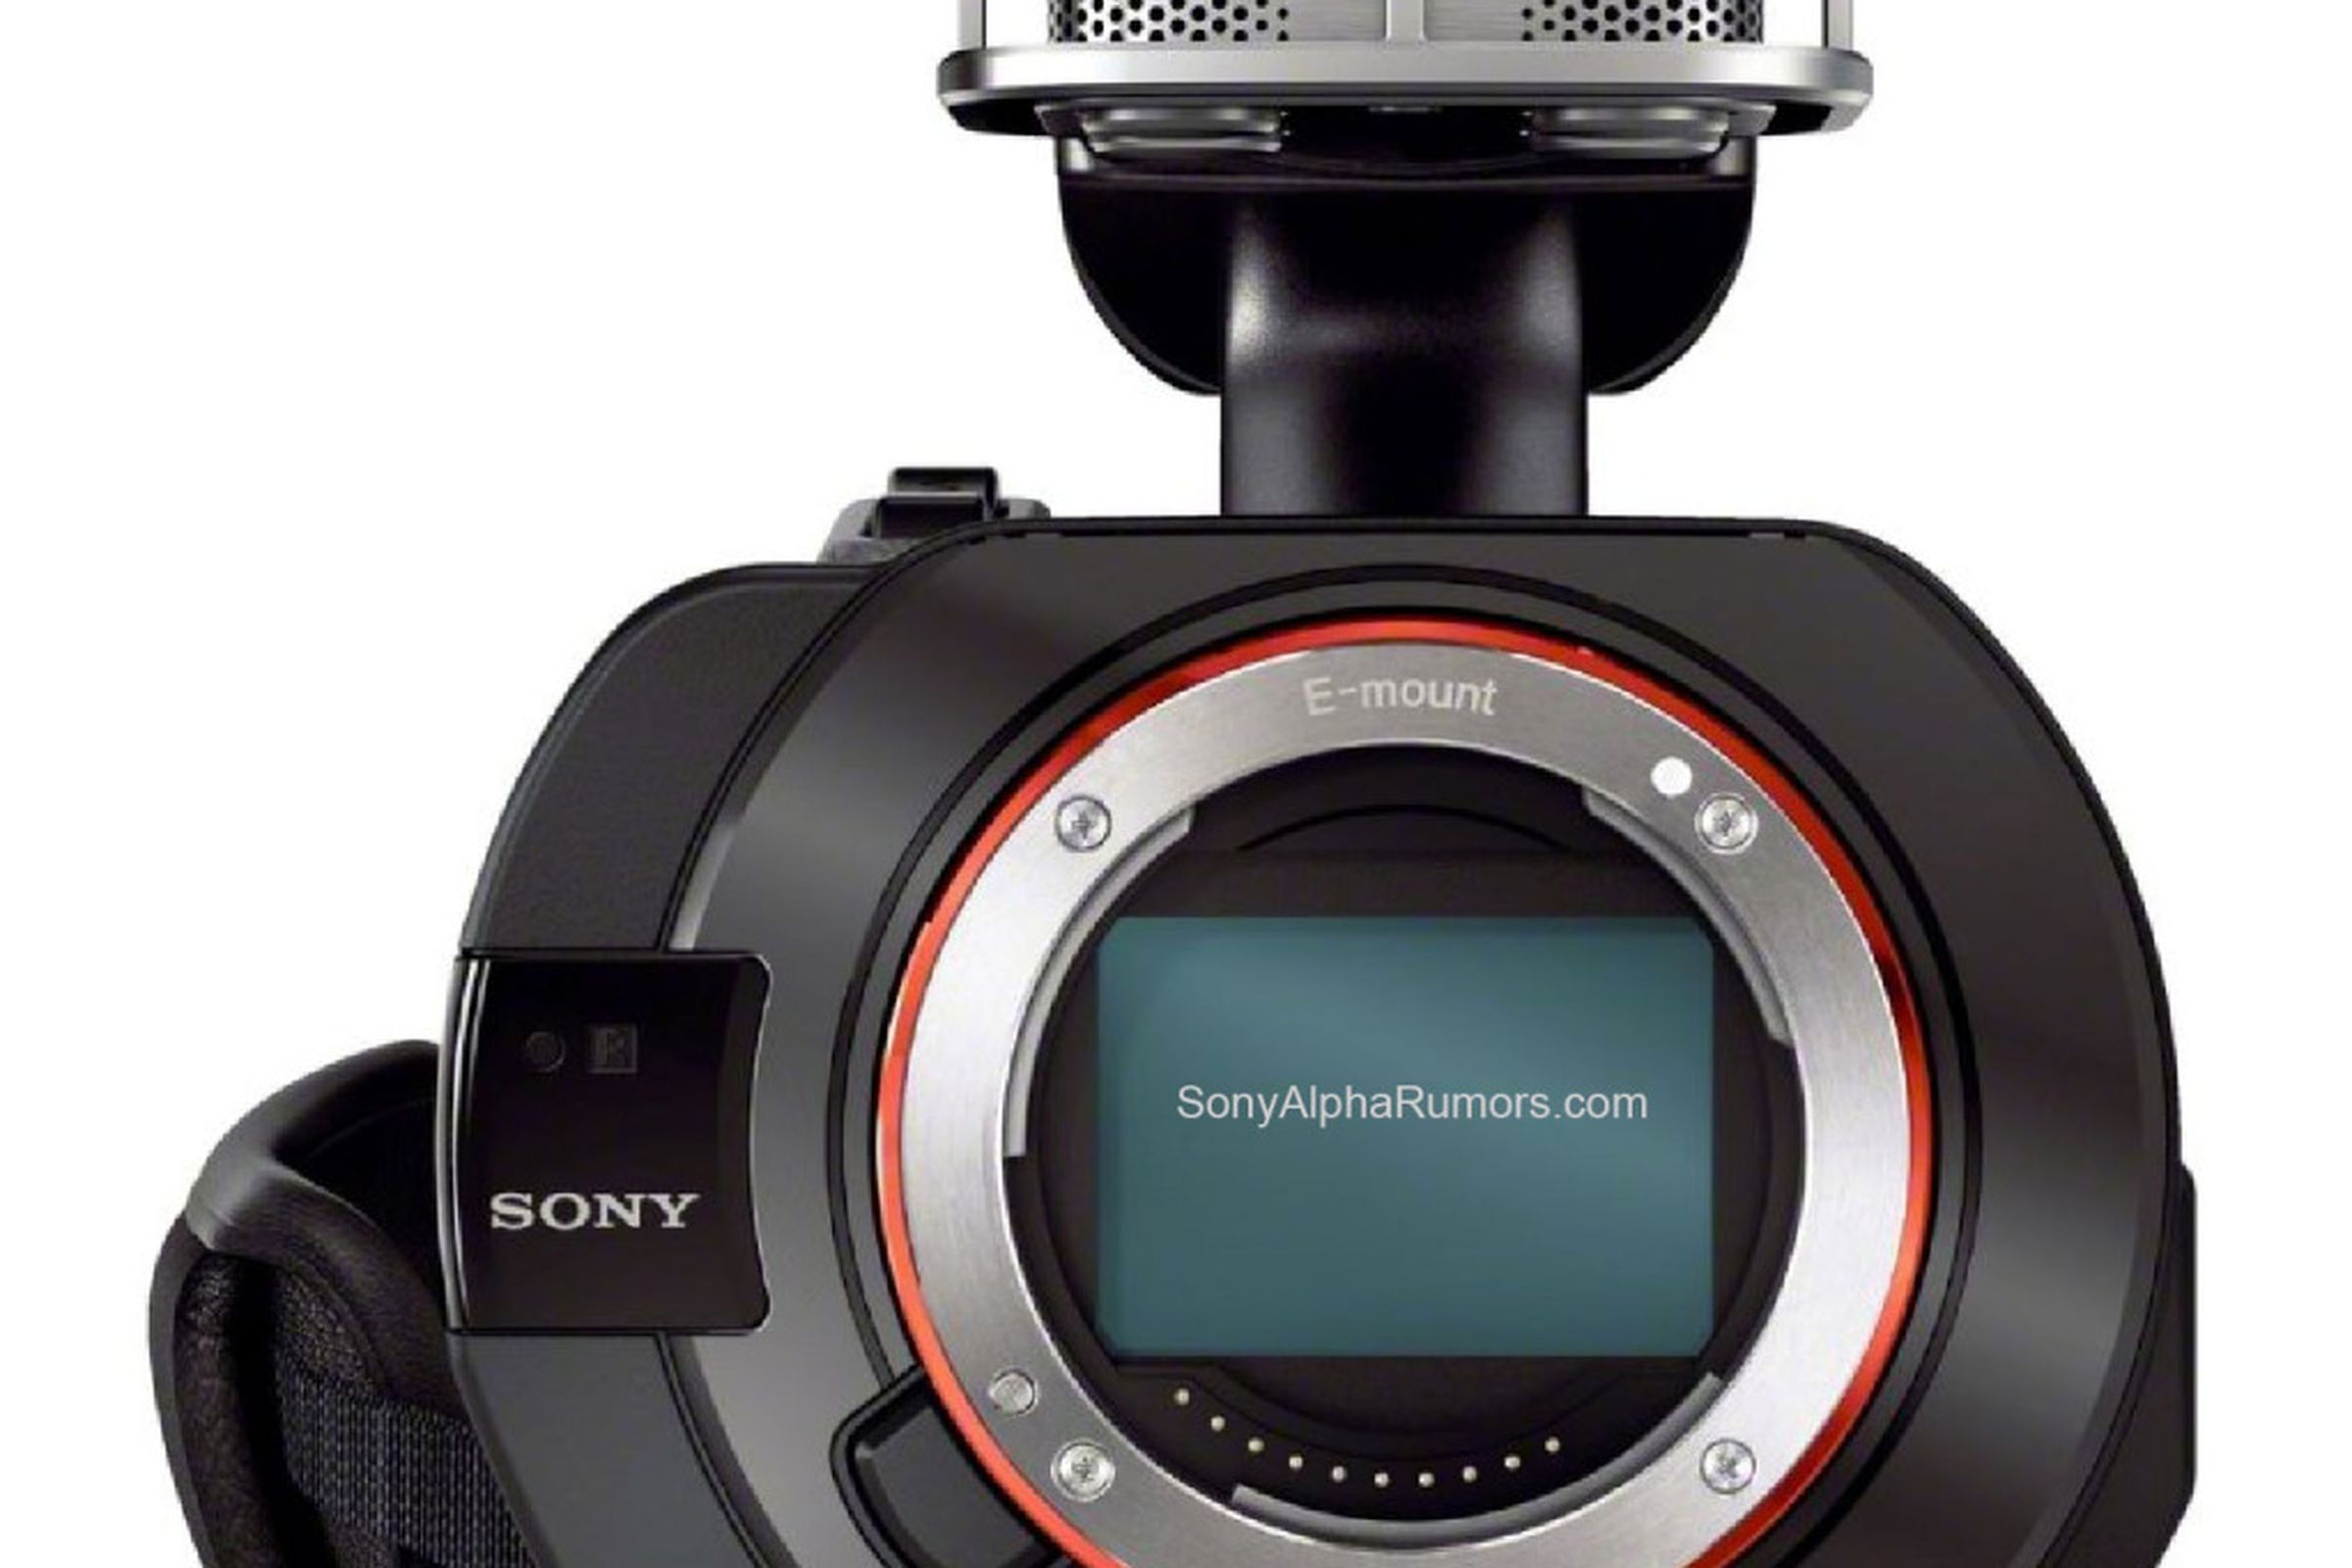 Sony Alpha Rumors VG-900 leak